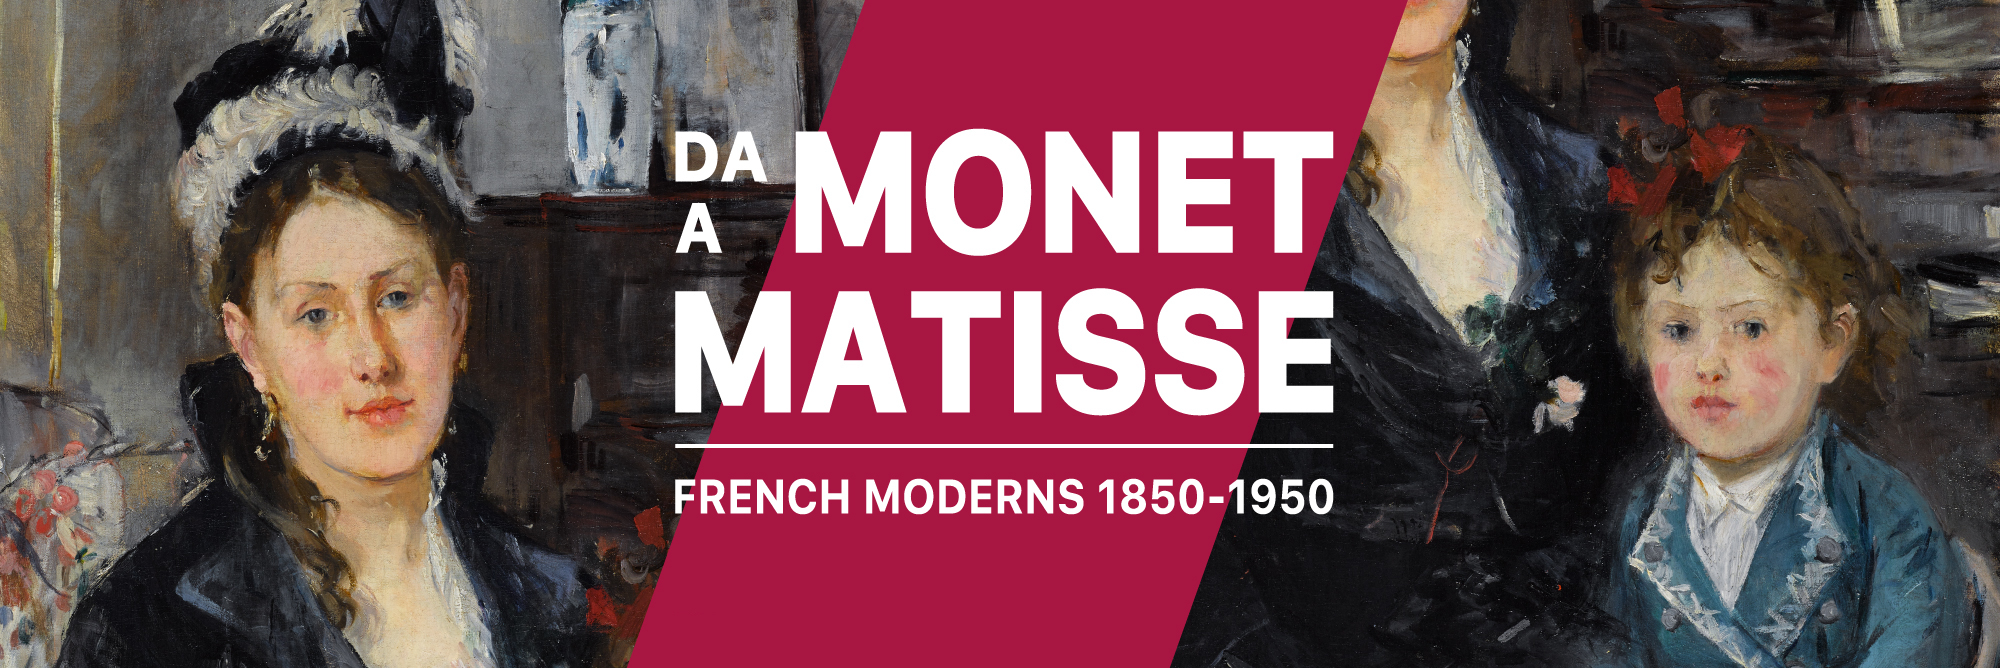 Mostra "Da Monet a Matisse. French Moderns, 1850-1950" 650